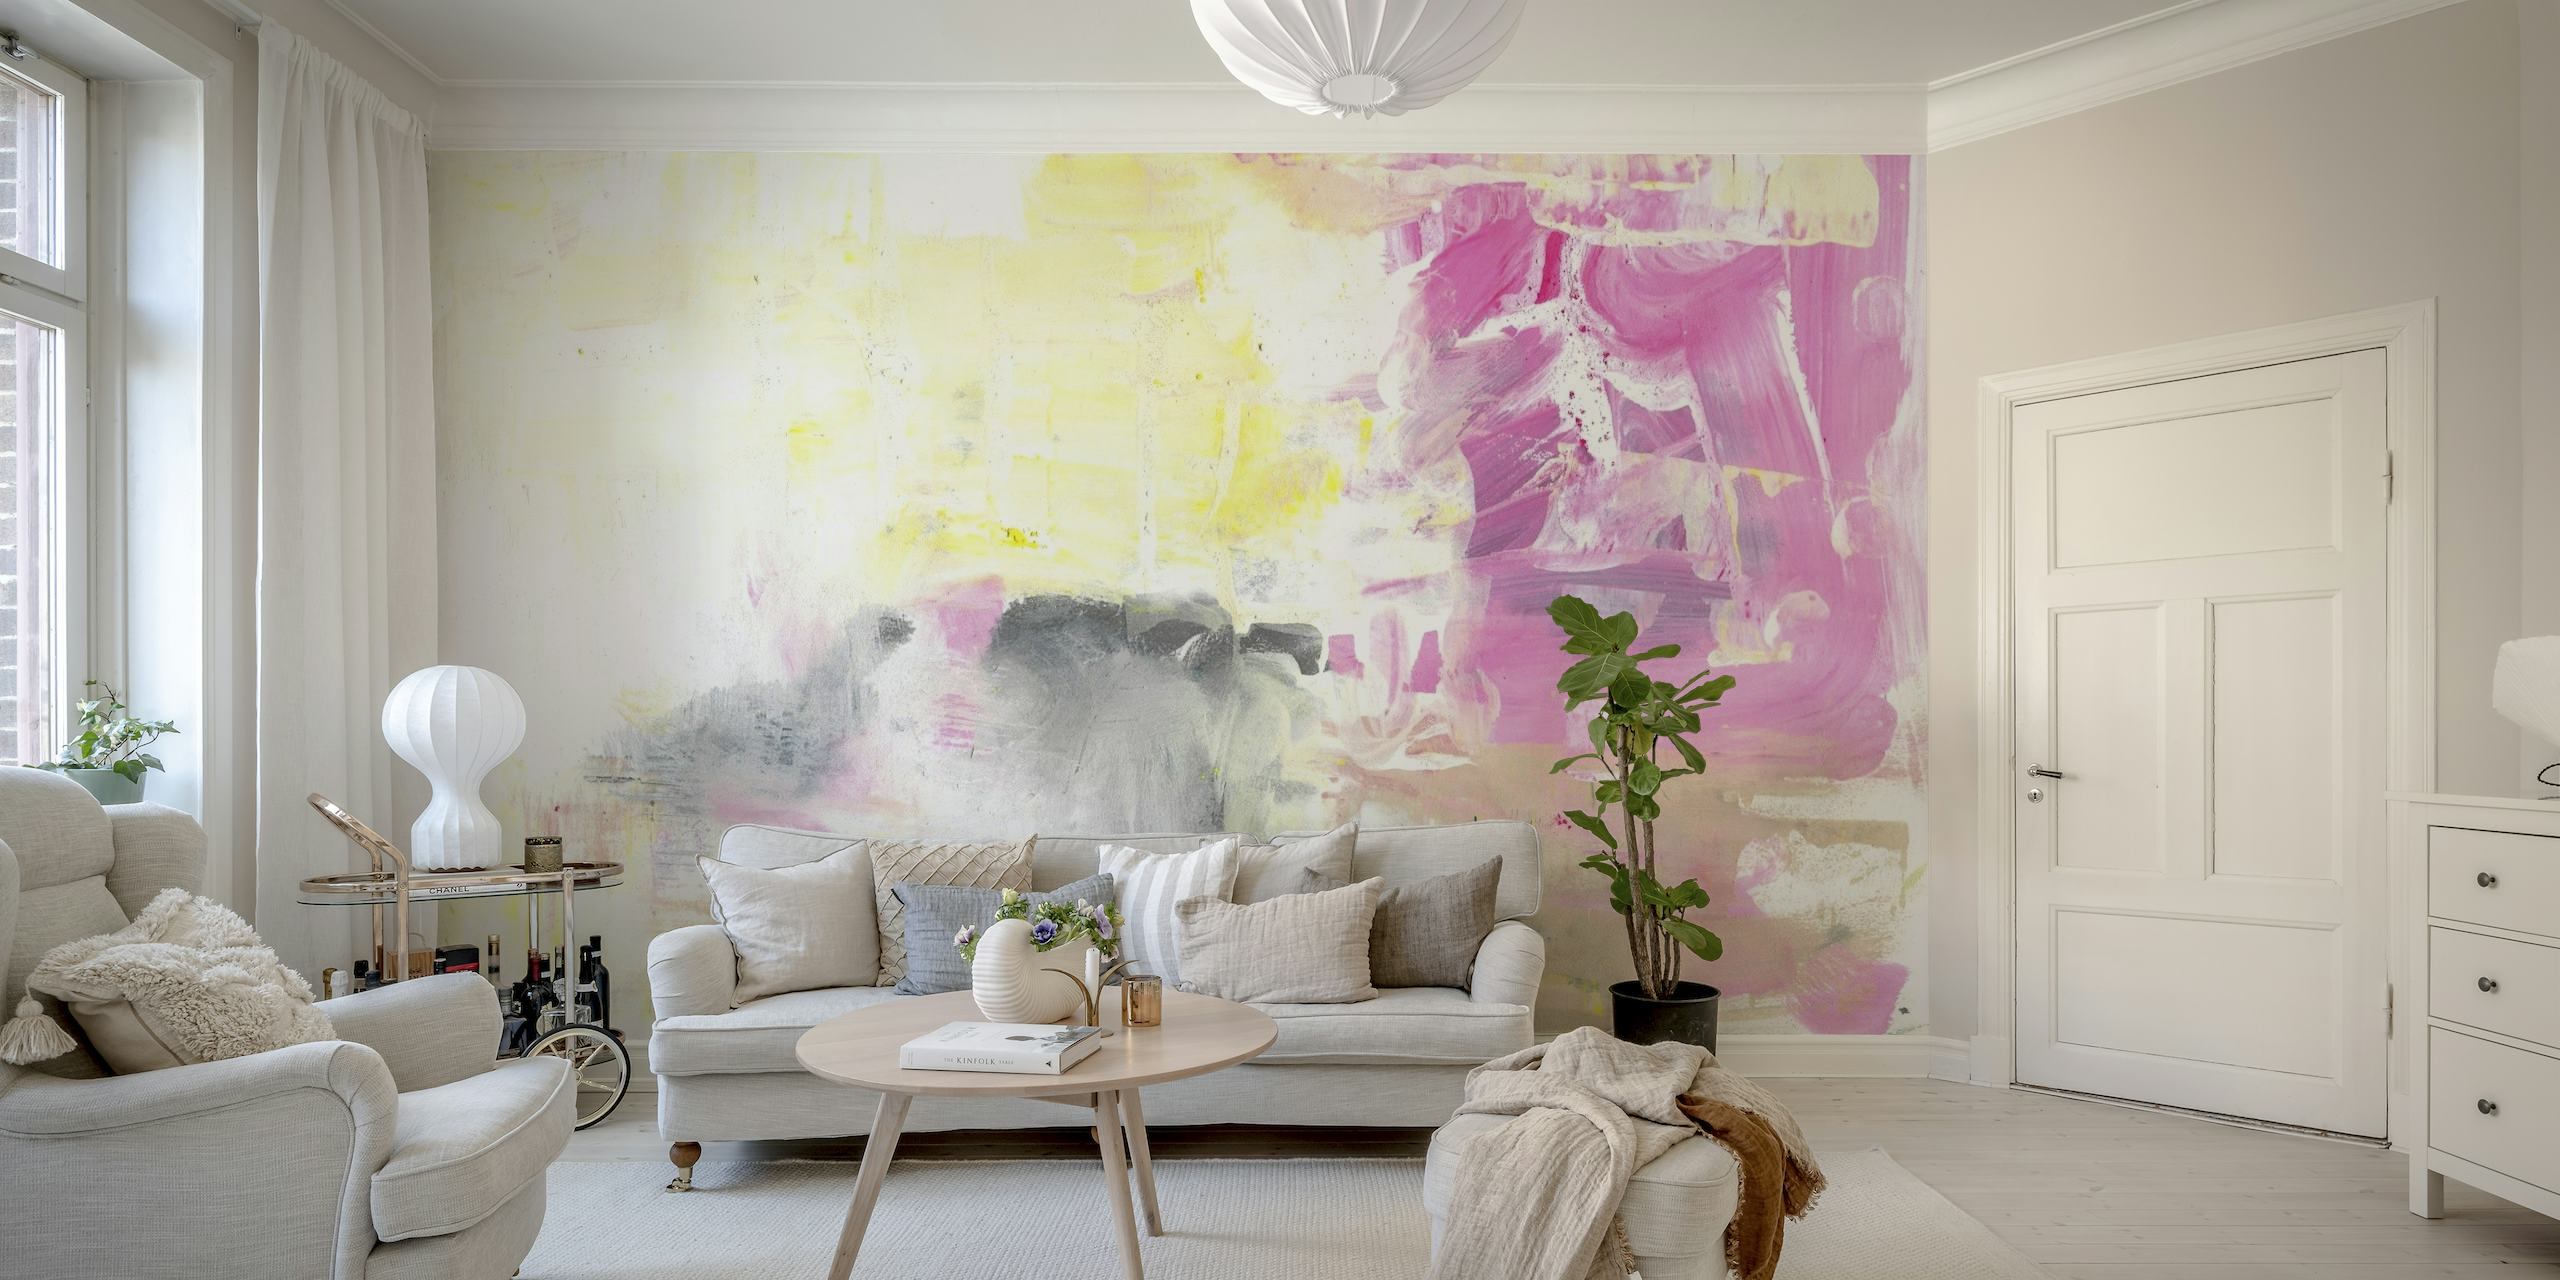 Abstrakt maleri nr. 17 vægmaleri med bløde pink, grå og hvide toner med udtryksfuldt penselarbejde